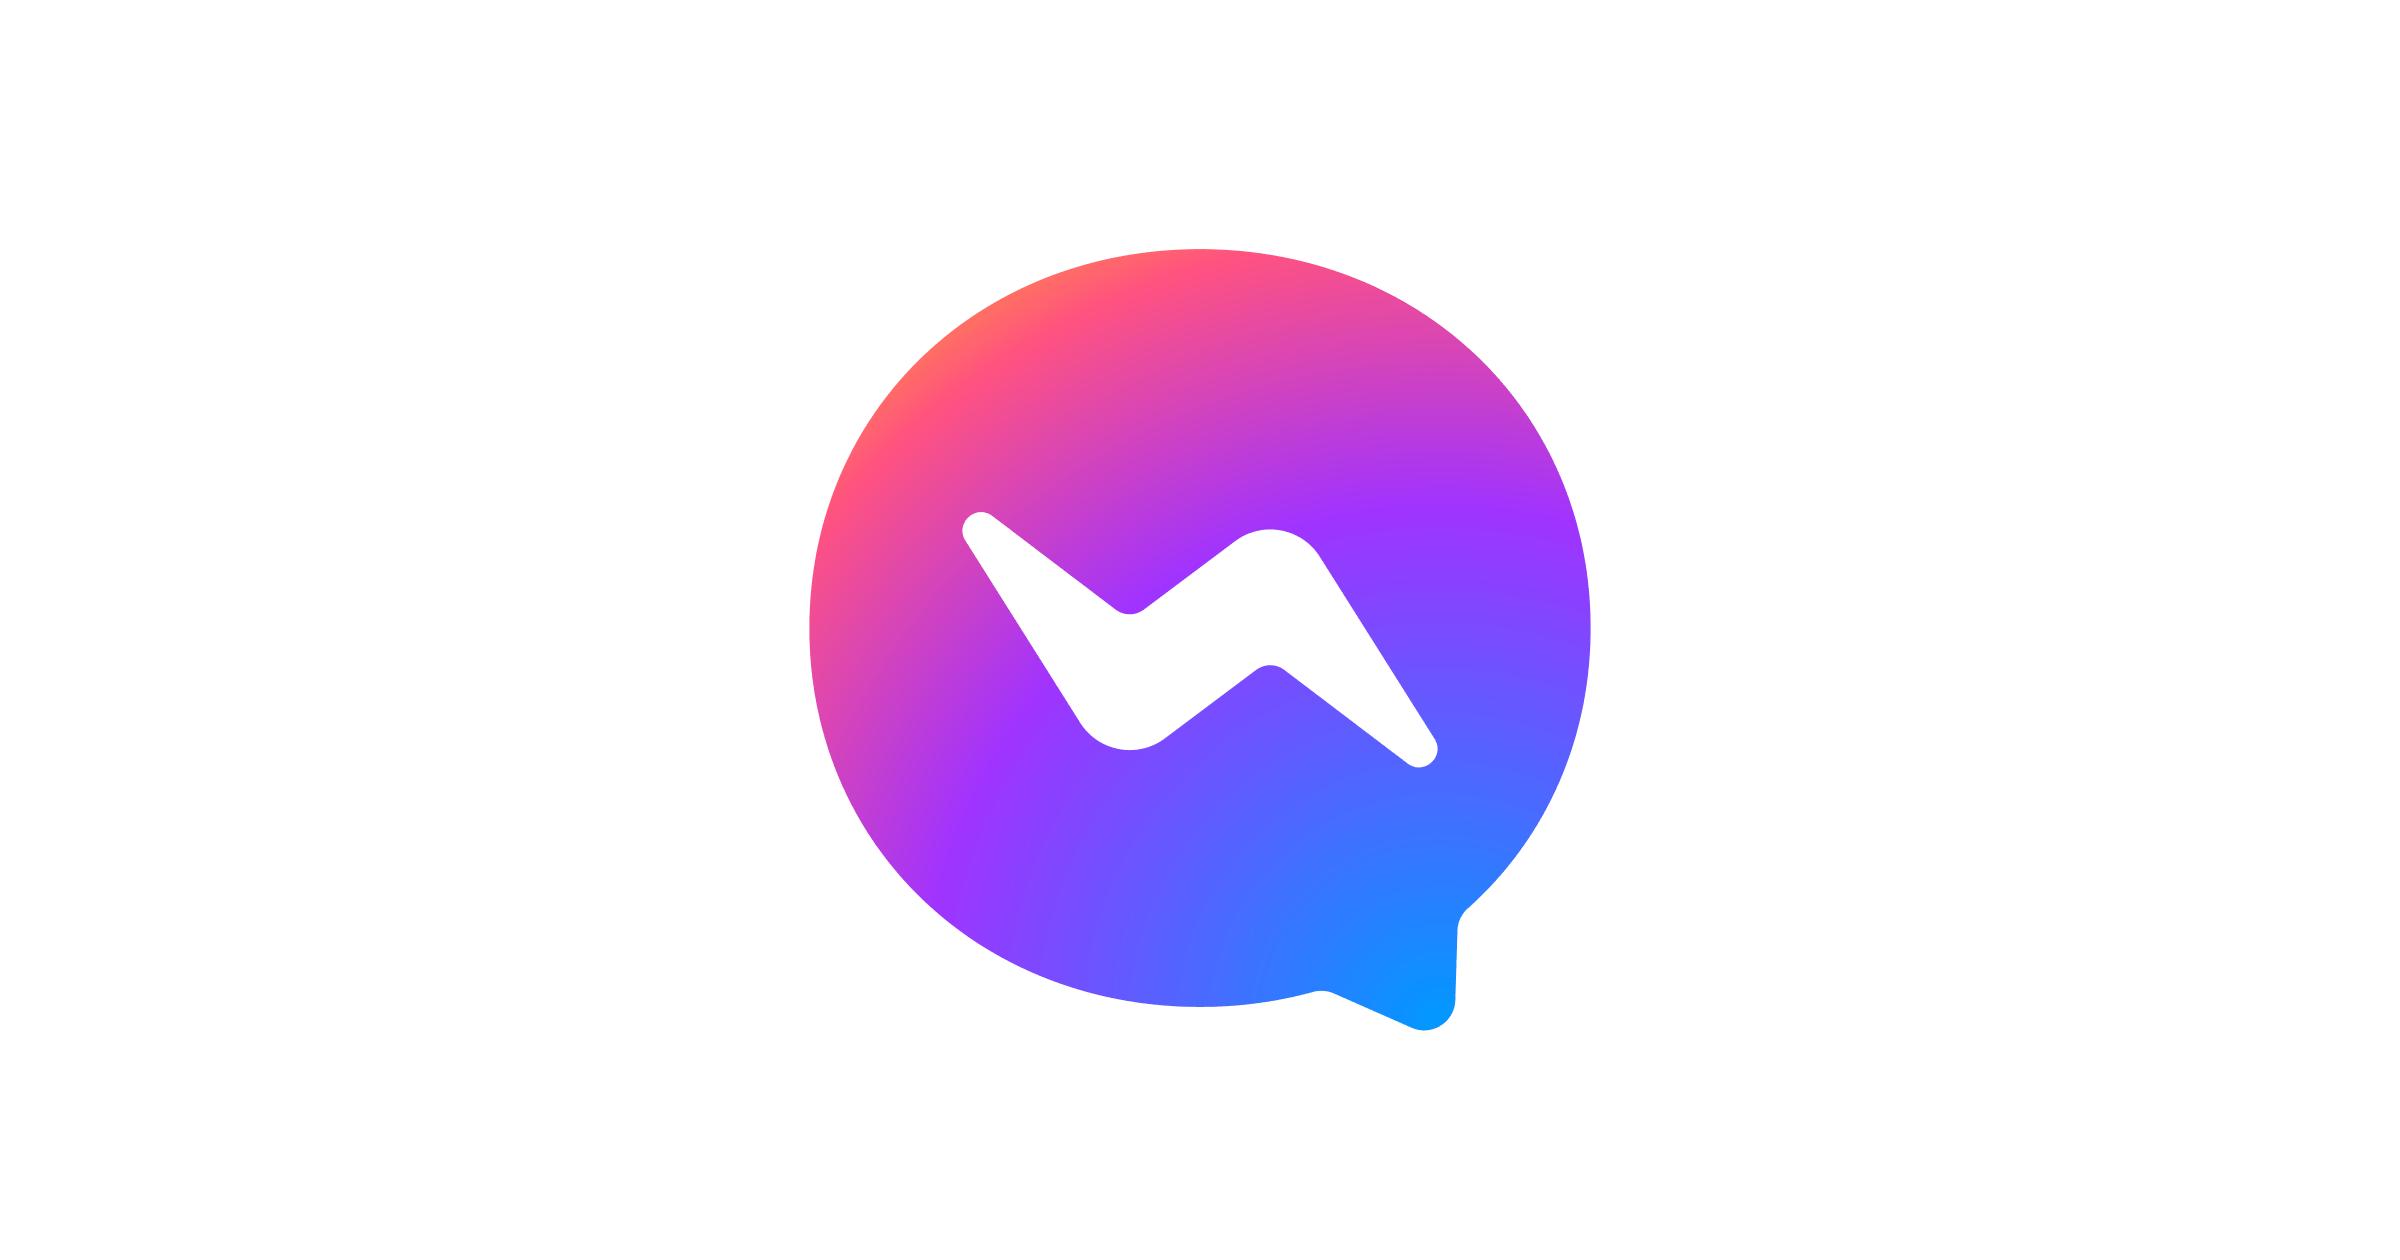 Messenger là ứng dụng chat miễn phí phổ biến hiện nay